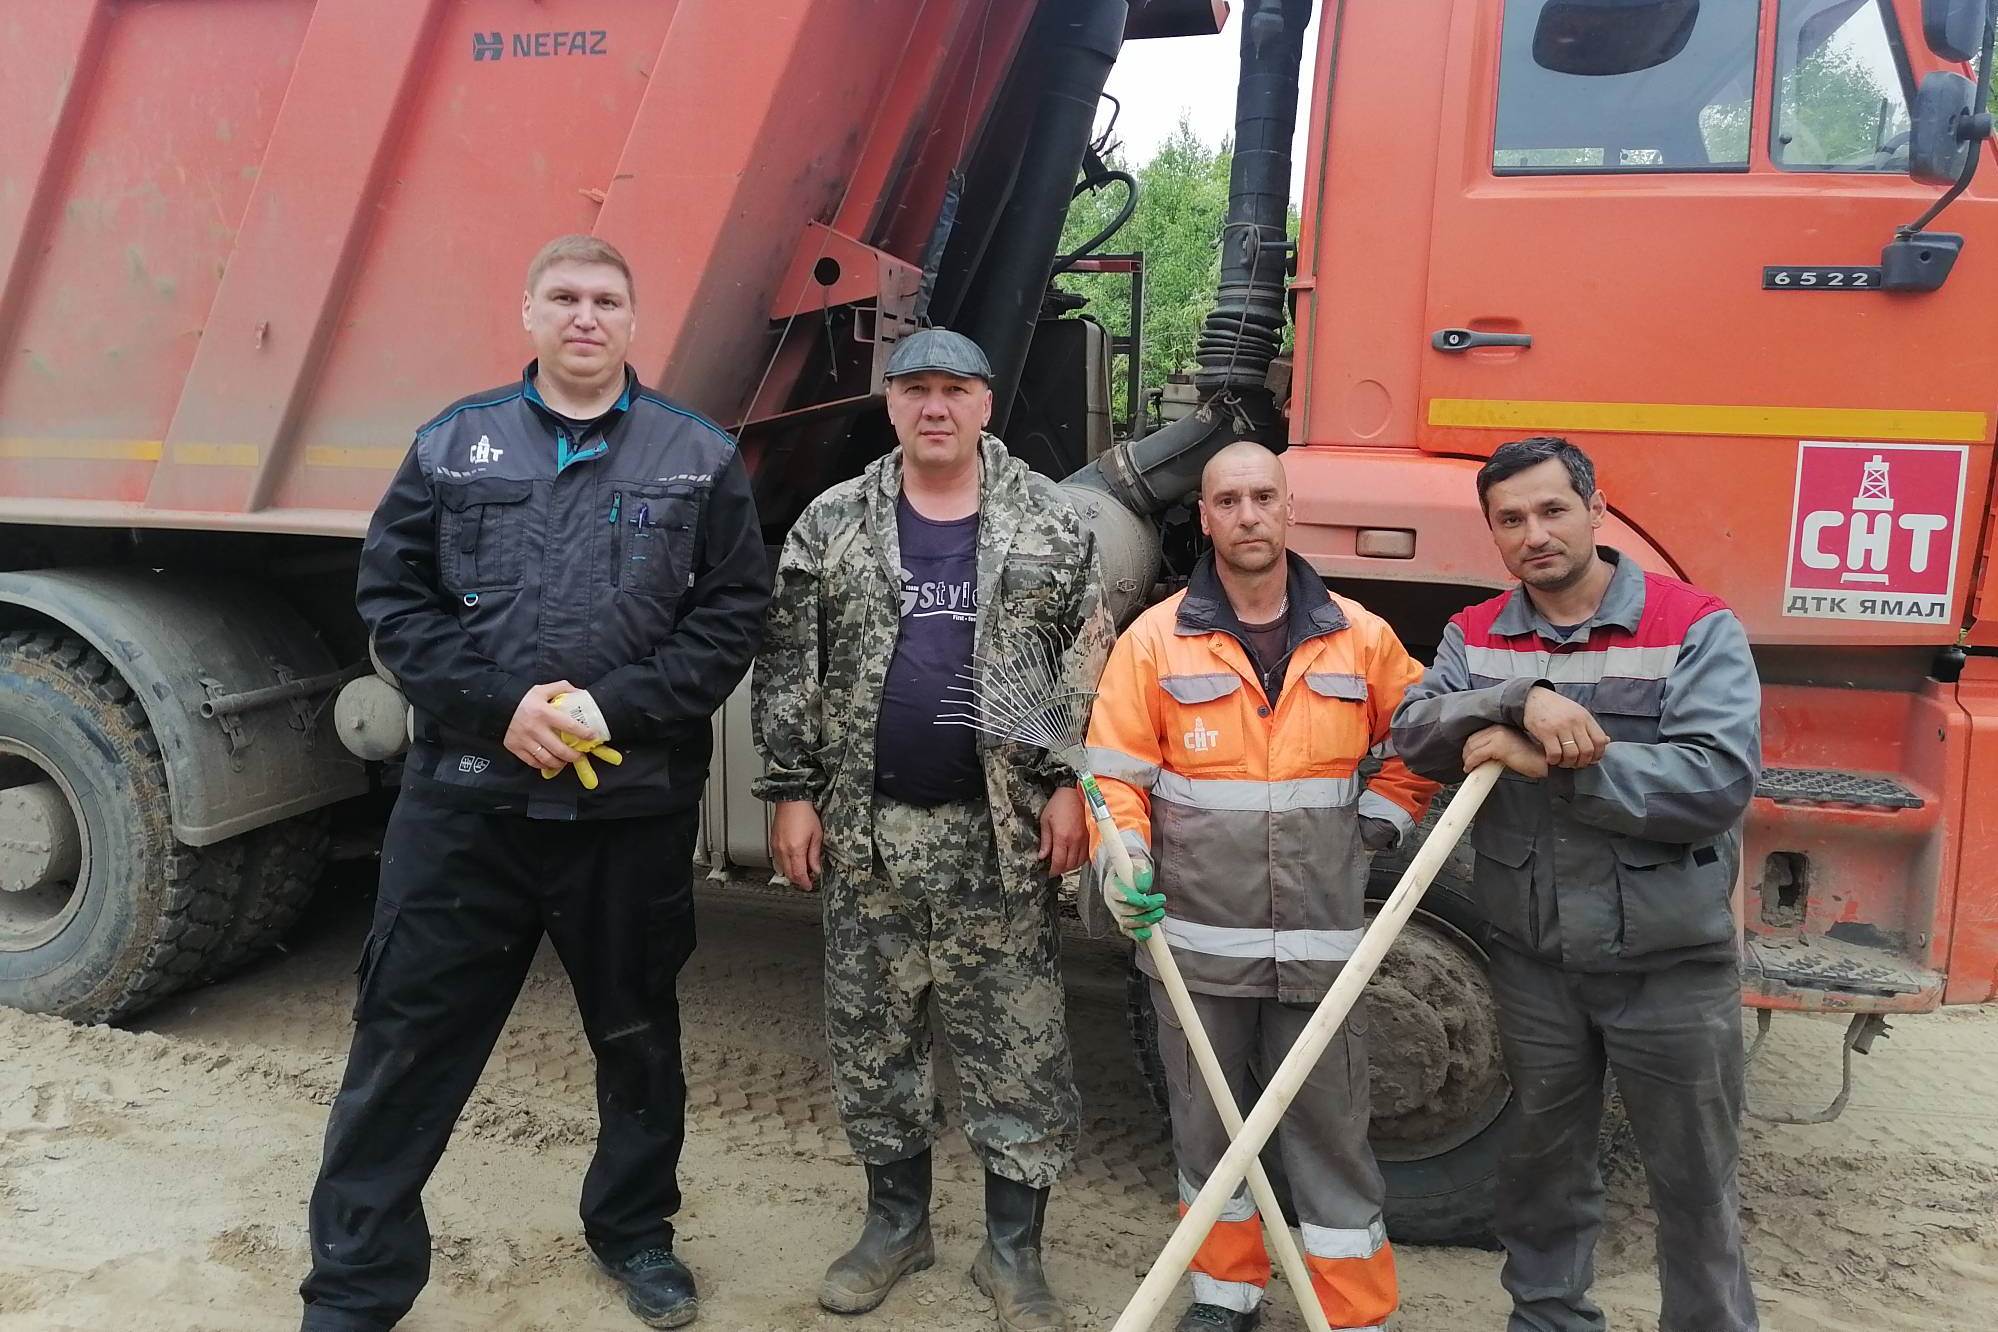 Работники ООО «ДТК Ямал» присоединились к экологической акции «Речная лента».